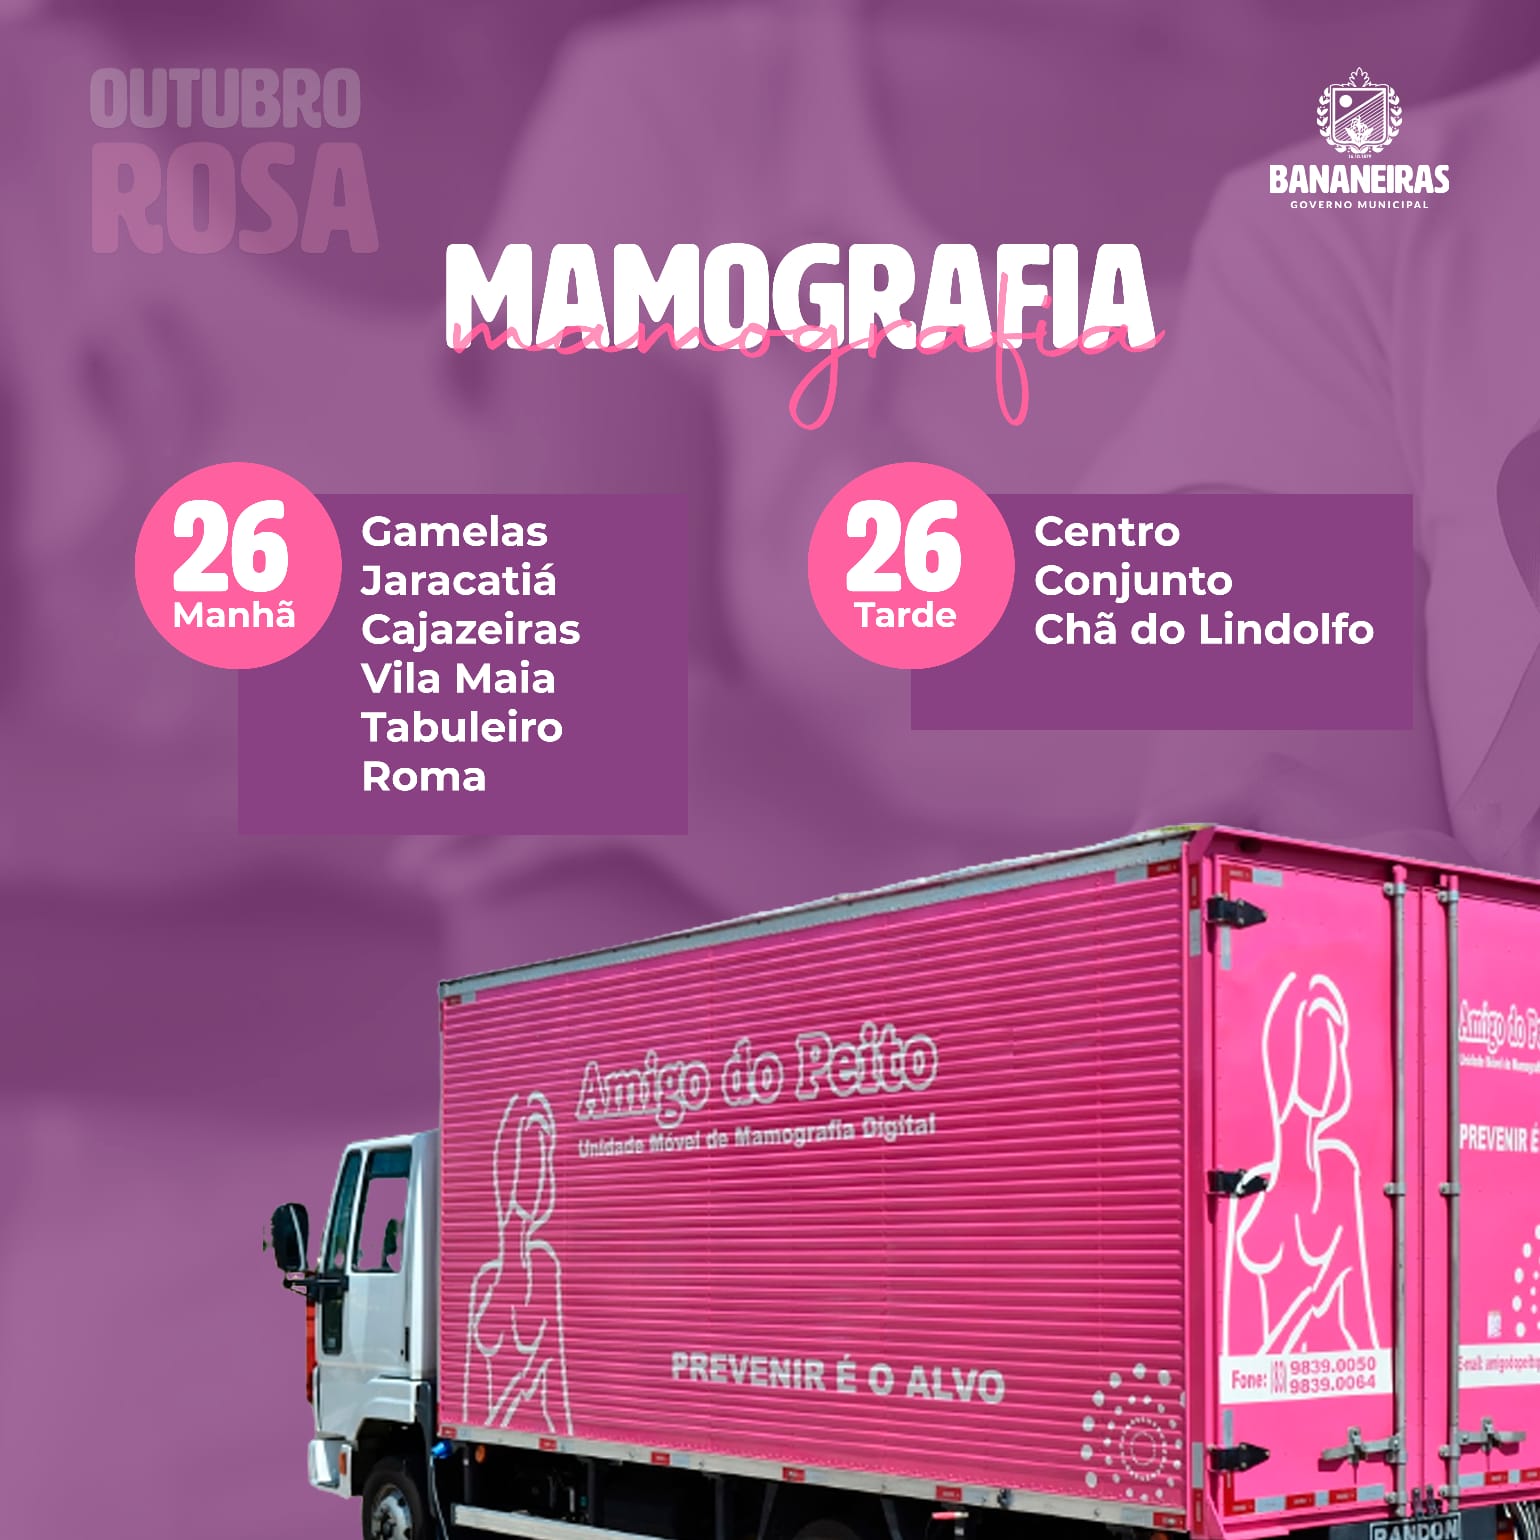 Caminhão da mamografia chegará a Bananeiras em ações do Outubro Rosa